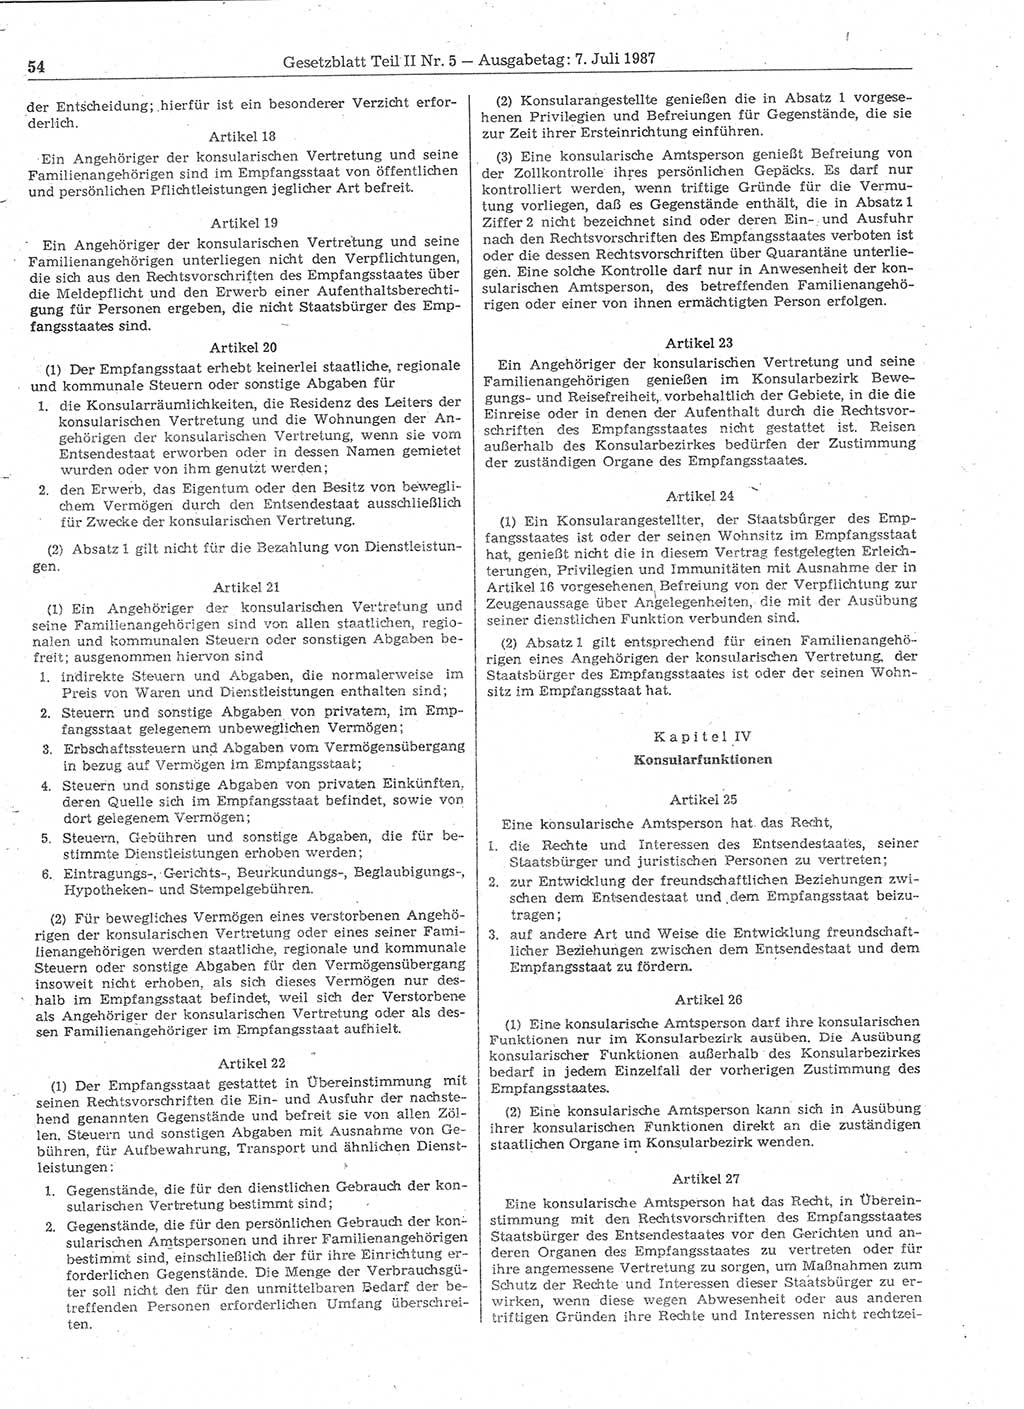 Gesetzblatt (GBl.) der Deutschen Demokratischen Republik (DDR) Teil ⅠⅠ 1987, Seite 54 (GBl. DDR ⅠⅠ 1987, S. 54)